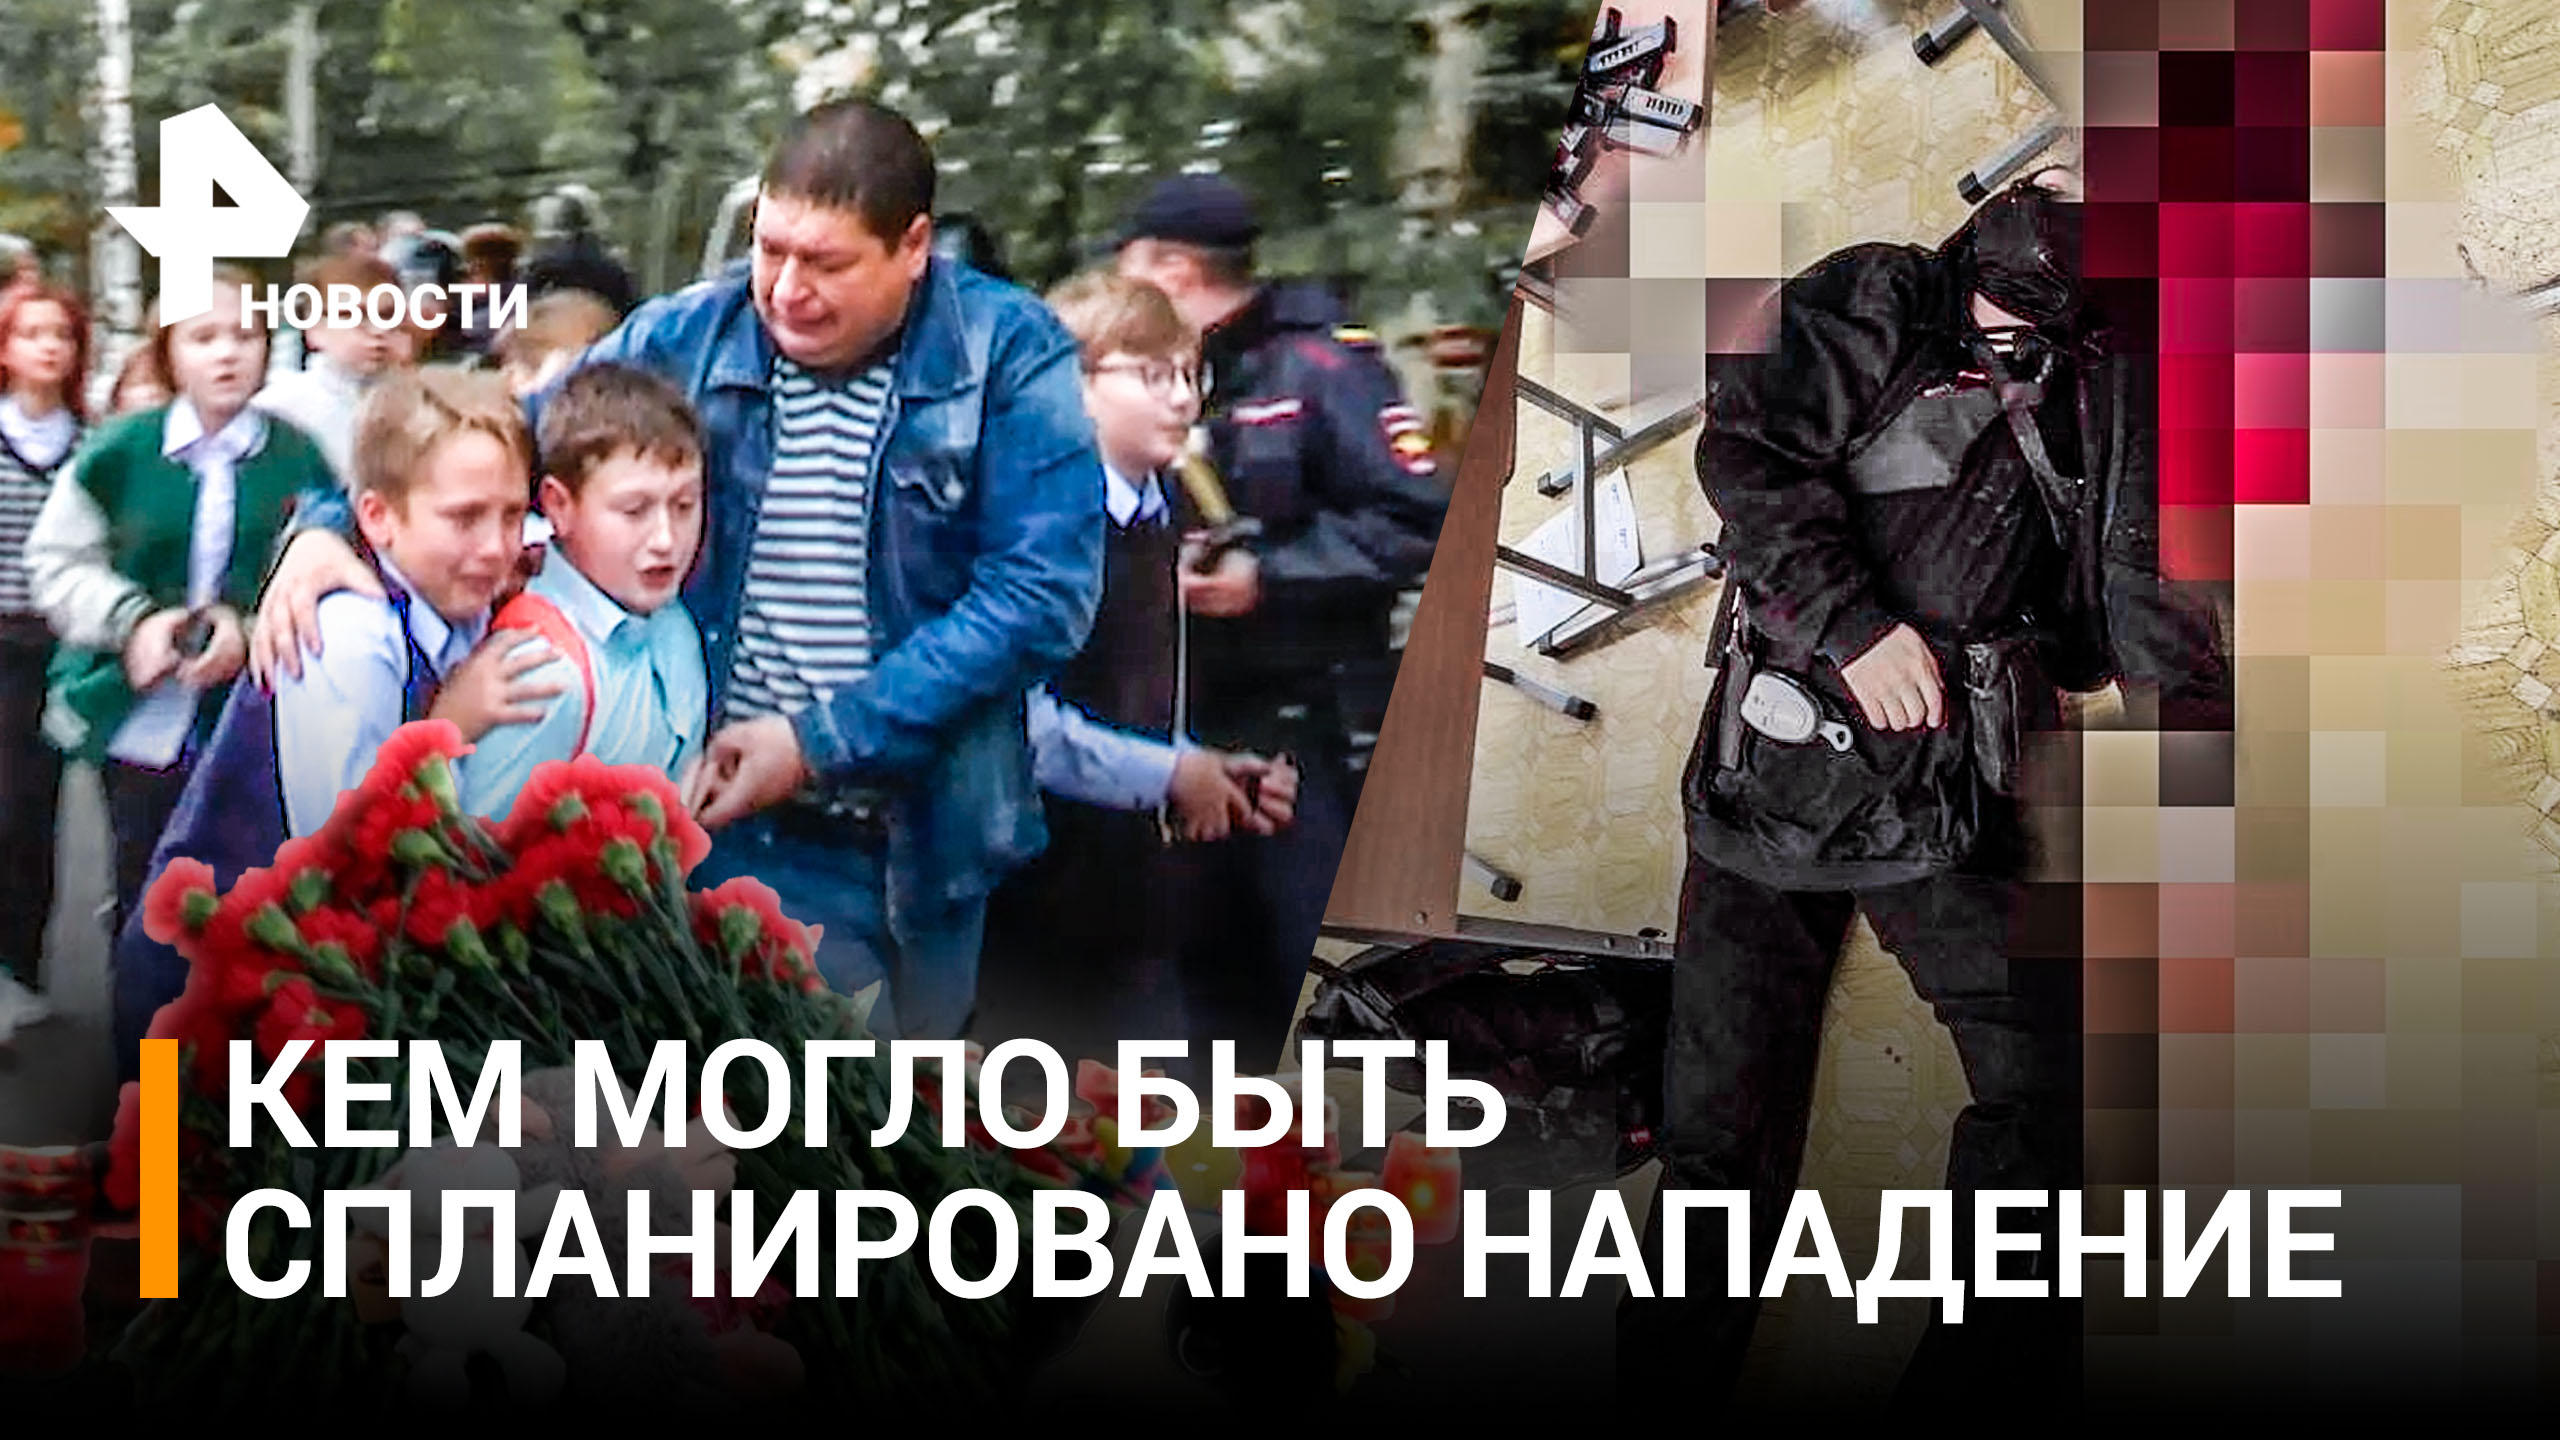 На Украине глумятся над трагедией в Ижевске, учитель продолжила урок — дети не паниковали / РЕН